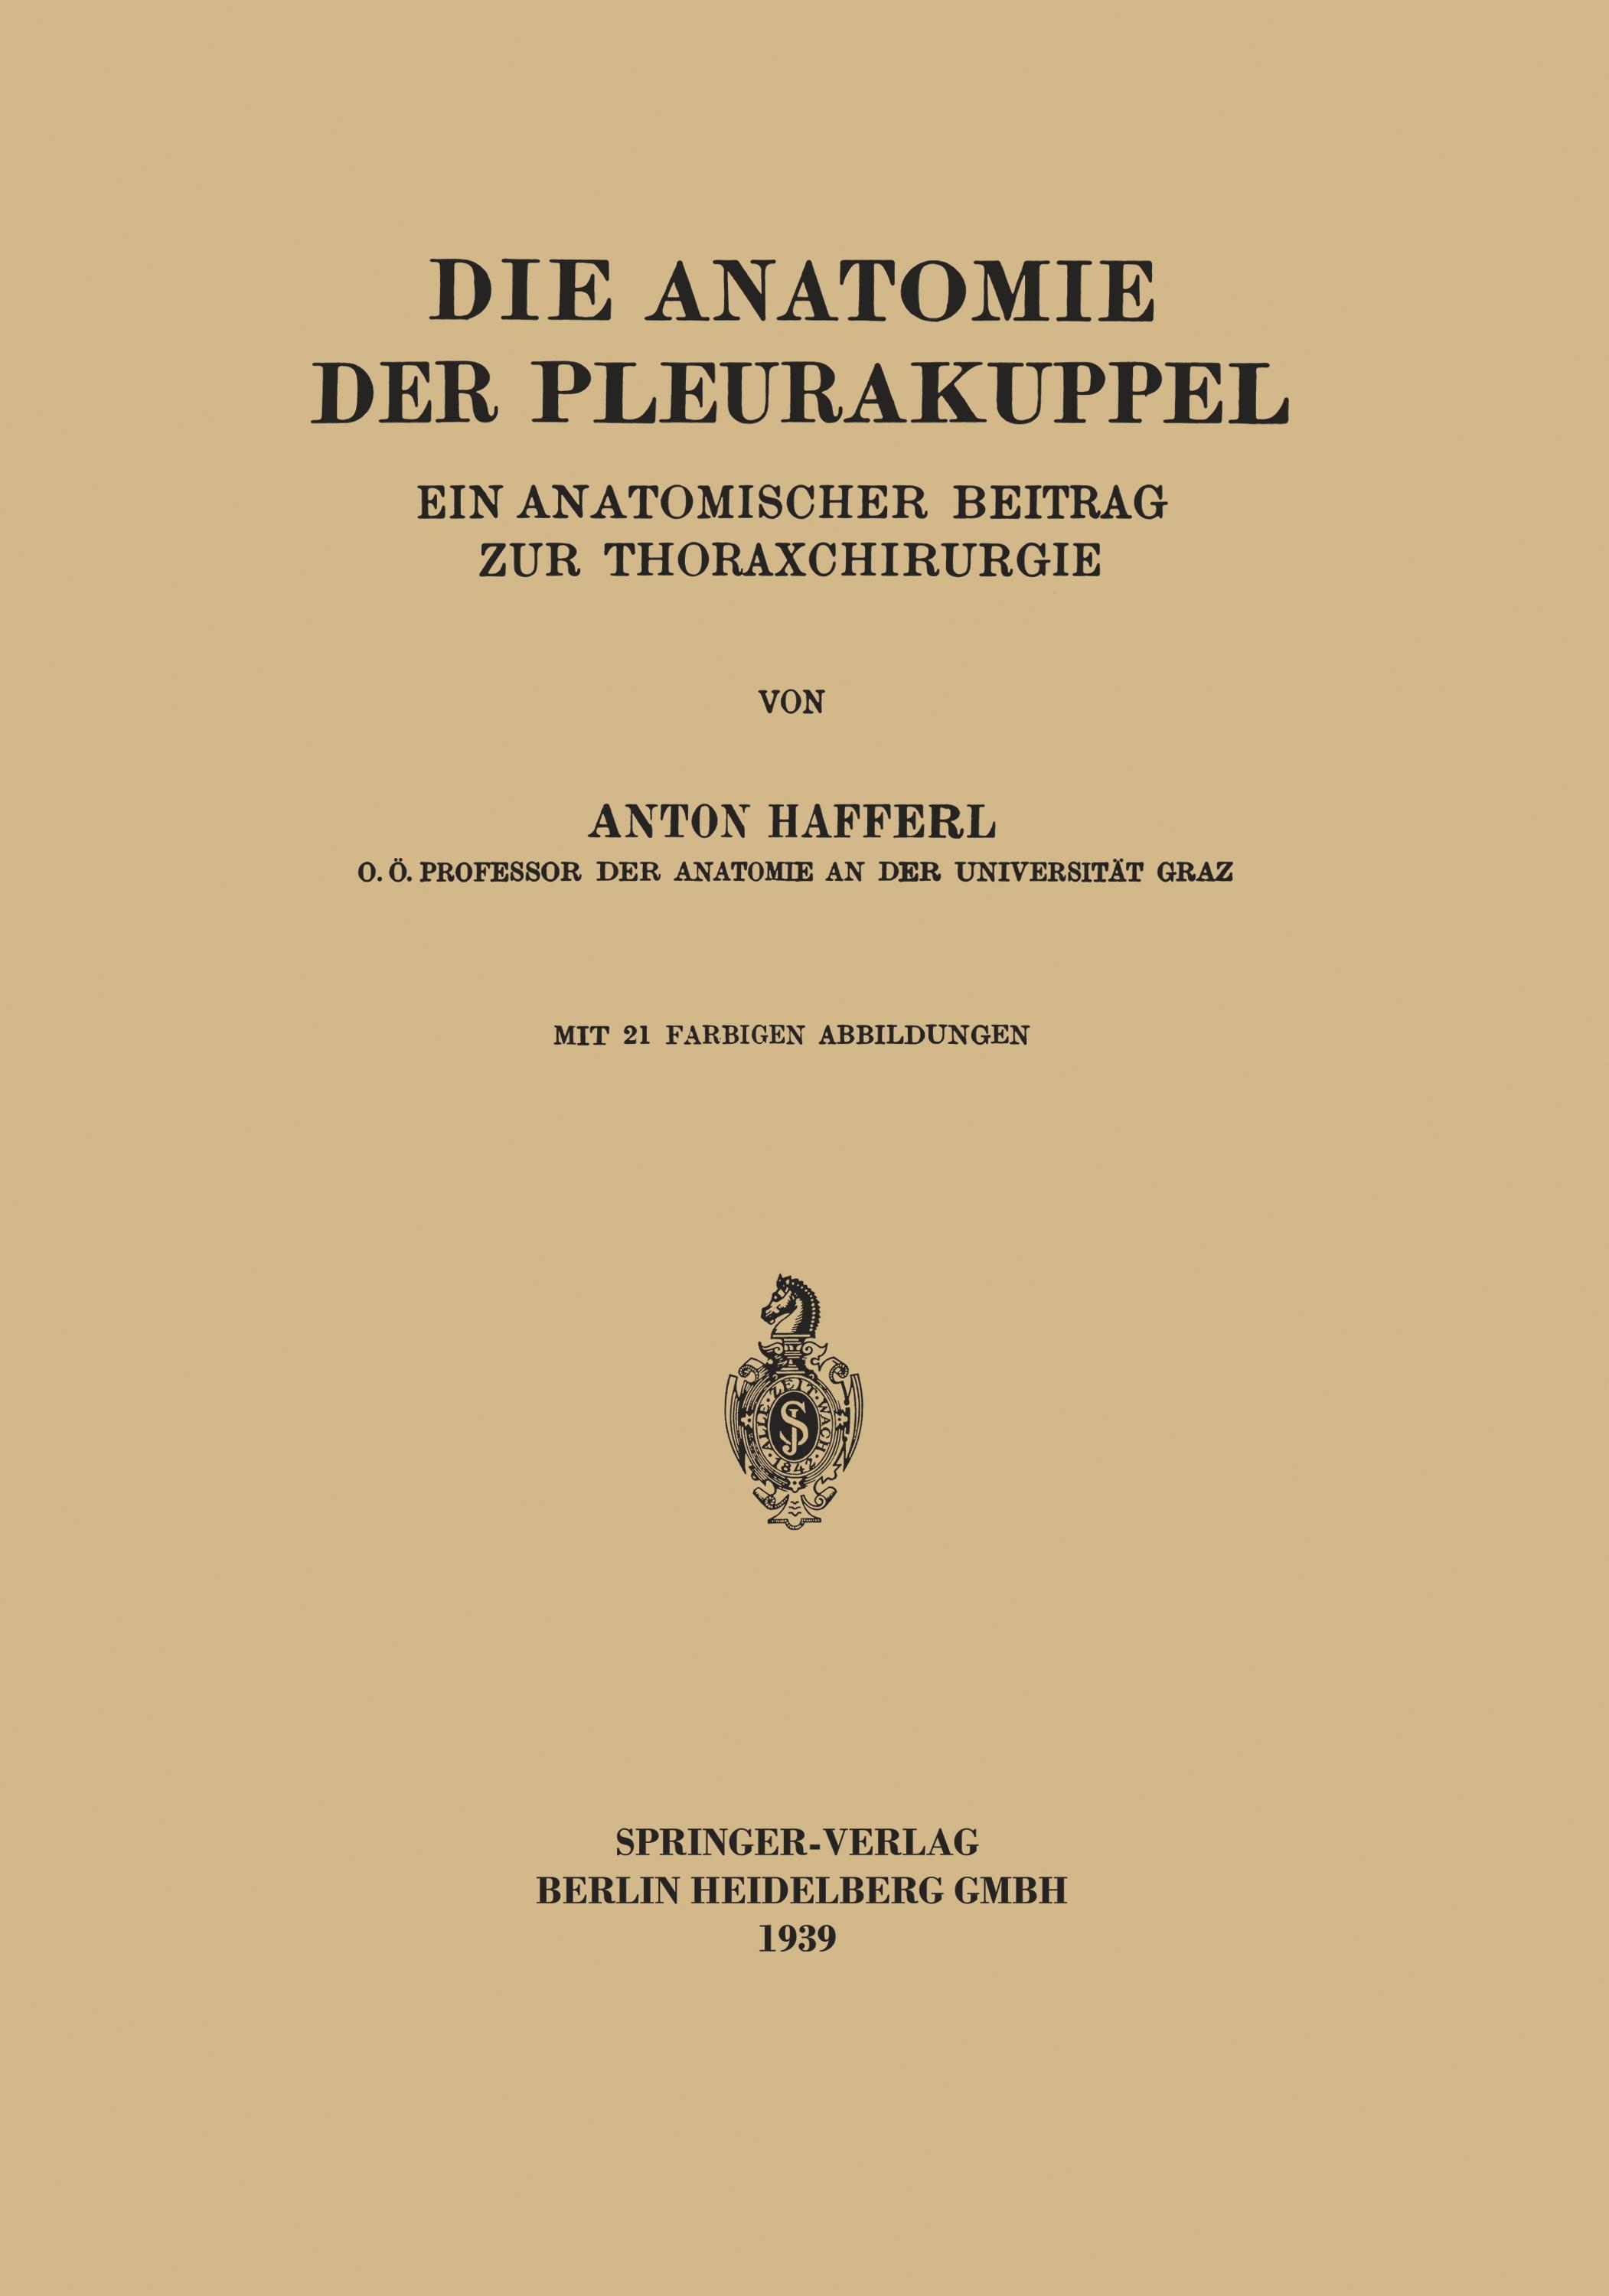 Die Anatomie der Pleurakuppel - Anton Hafferl